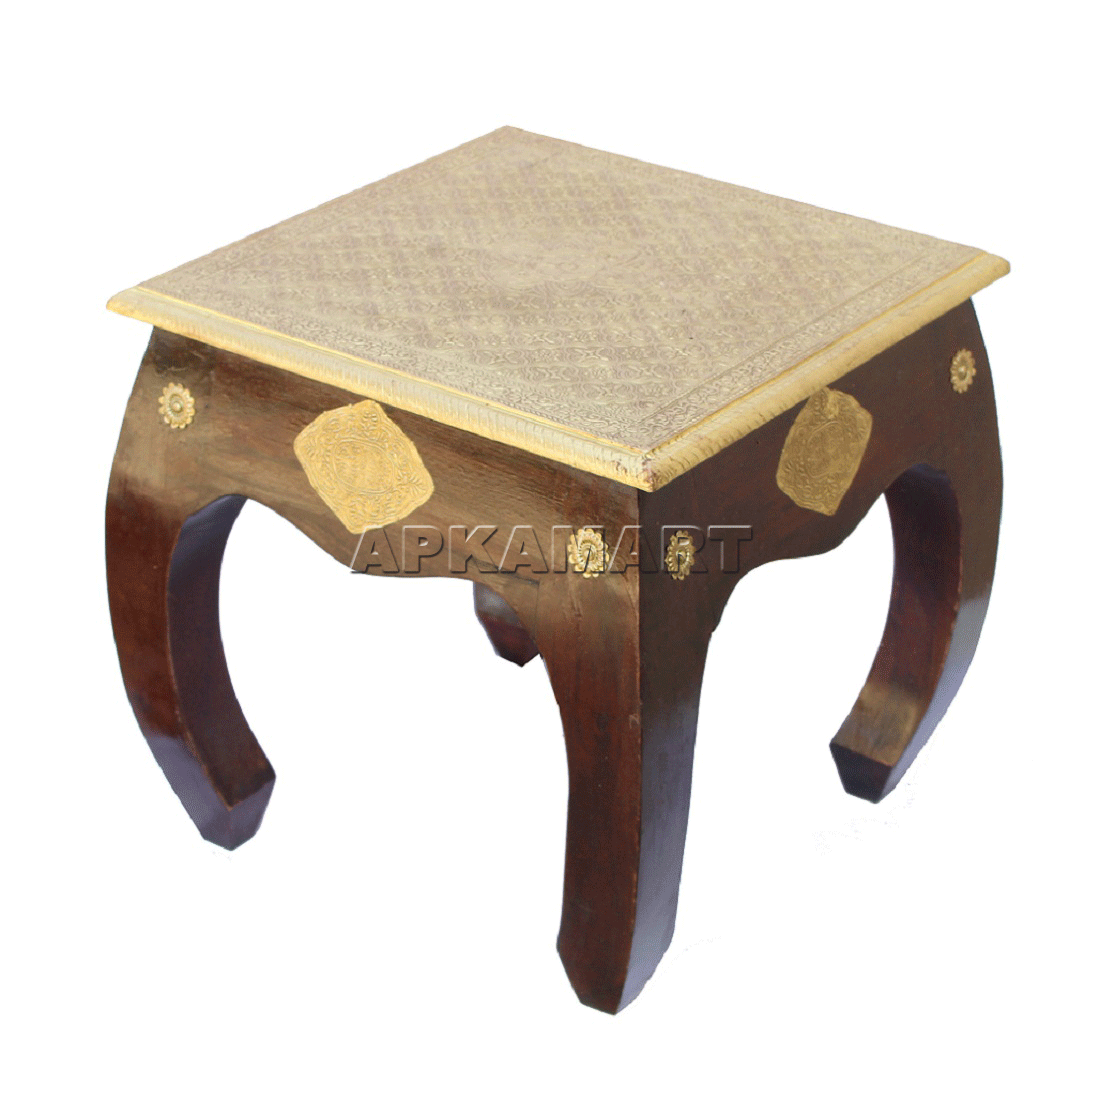 Brass Embellished Designer Coffee Table |Center Table for Living Room -16 Inch - ApkaMart